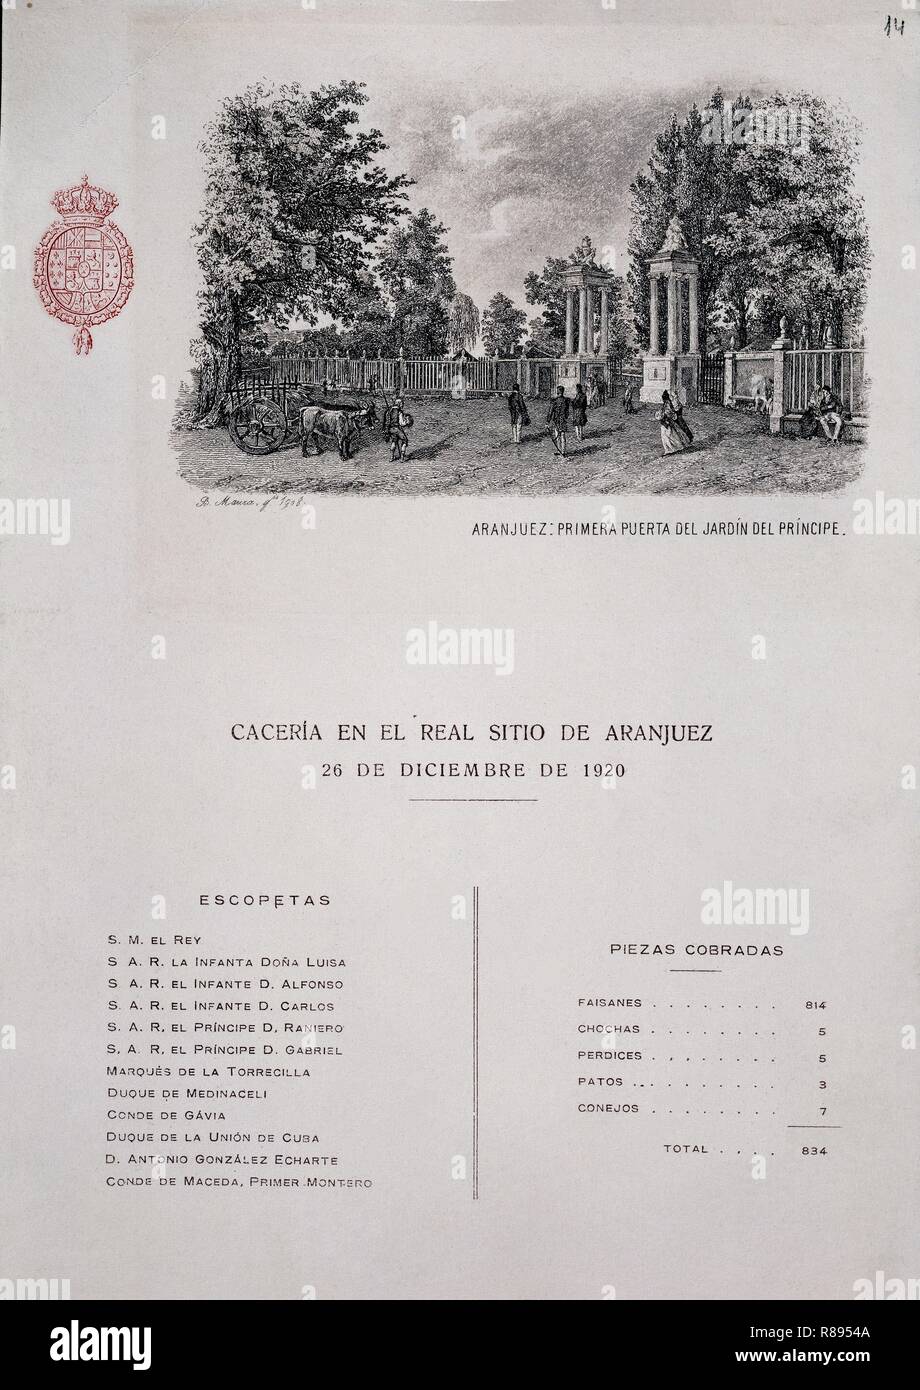 ESTADO DE CACERIA EN EL REAL SITIO DE ARANJUEZ -26/10/1920-RELACION DE ESCOPETAS Y PIEZAS. Location: PALACIO REAL-BIBLIOTECA. MADRID. SPAIN. Stock Photo